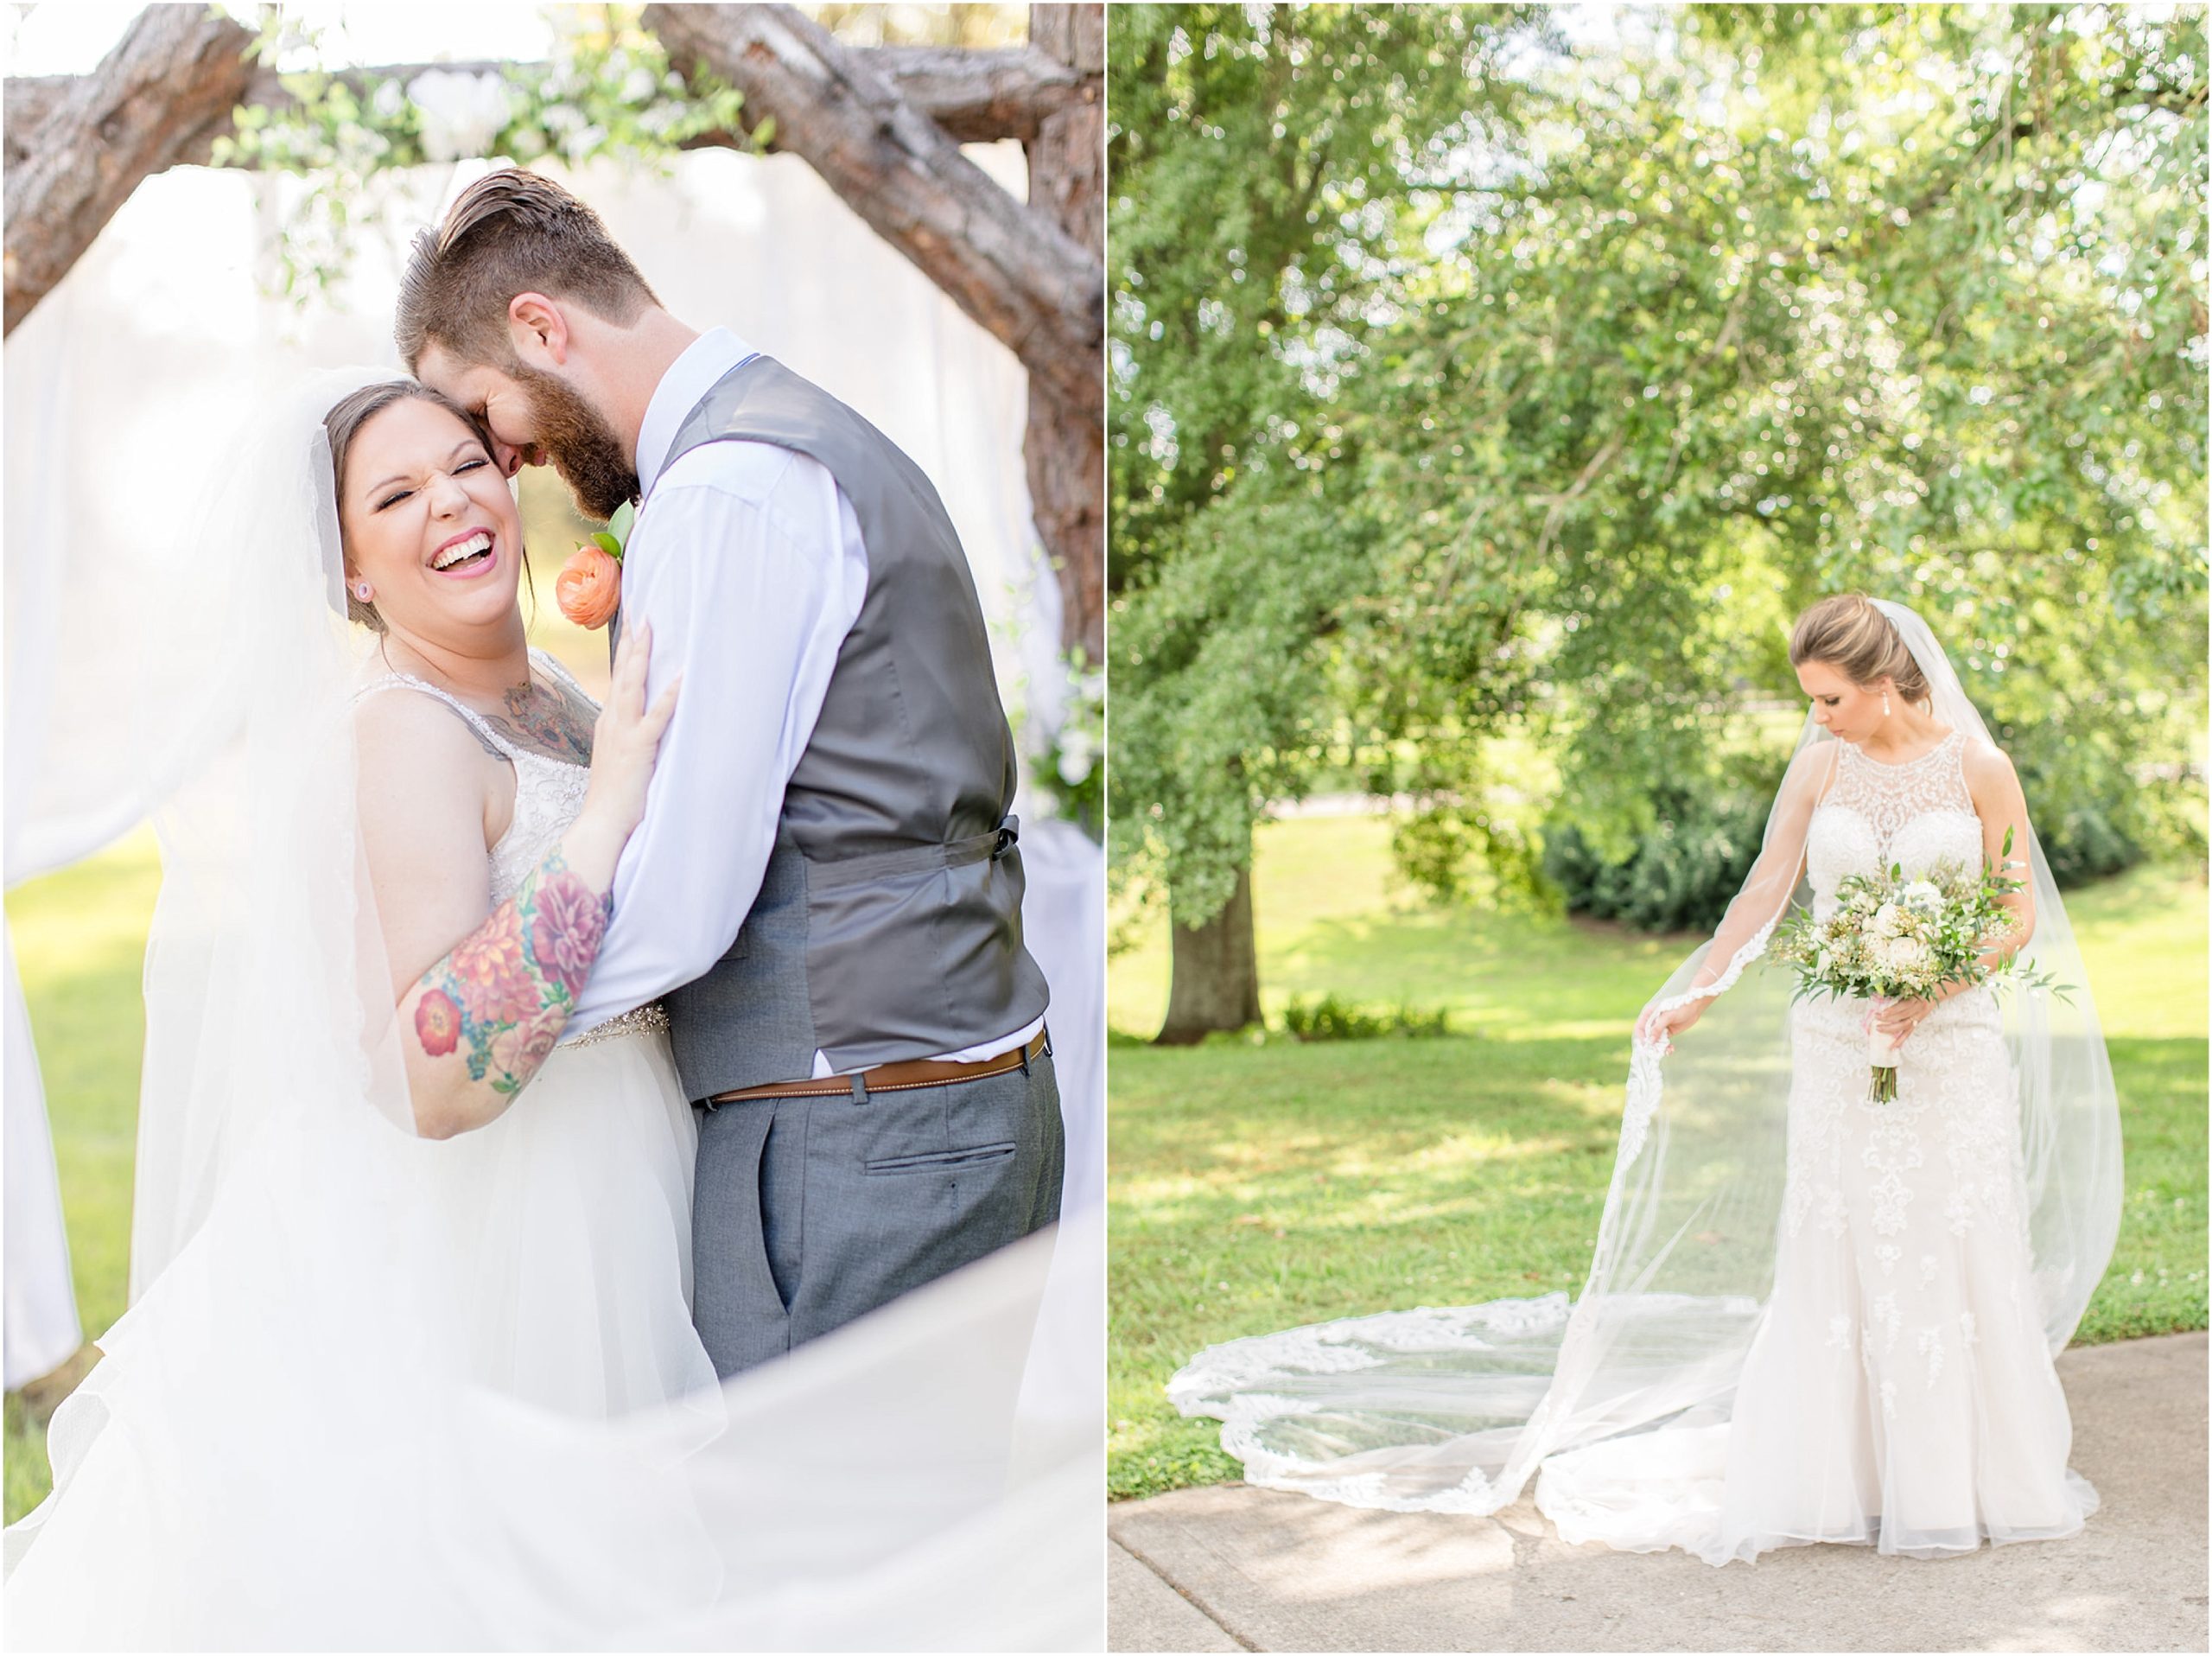 Birmingham, Alabama Wedding Photographers Best of Weddings & Engagements 2019